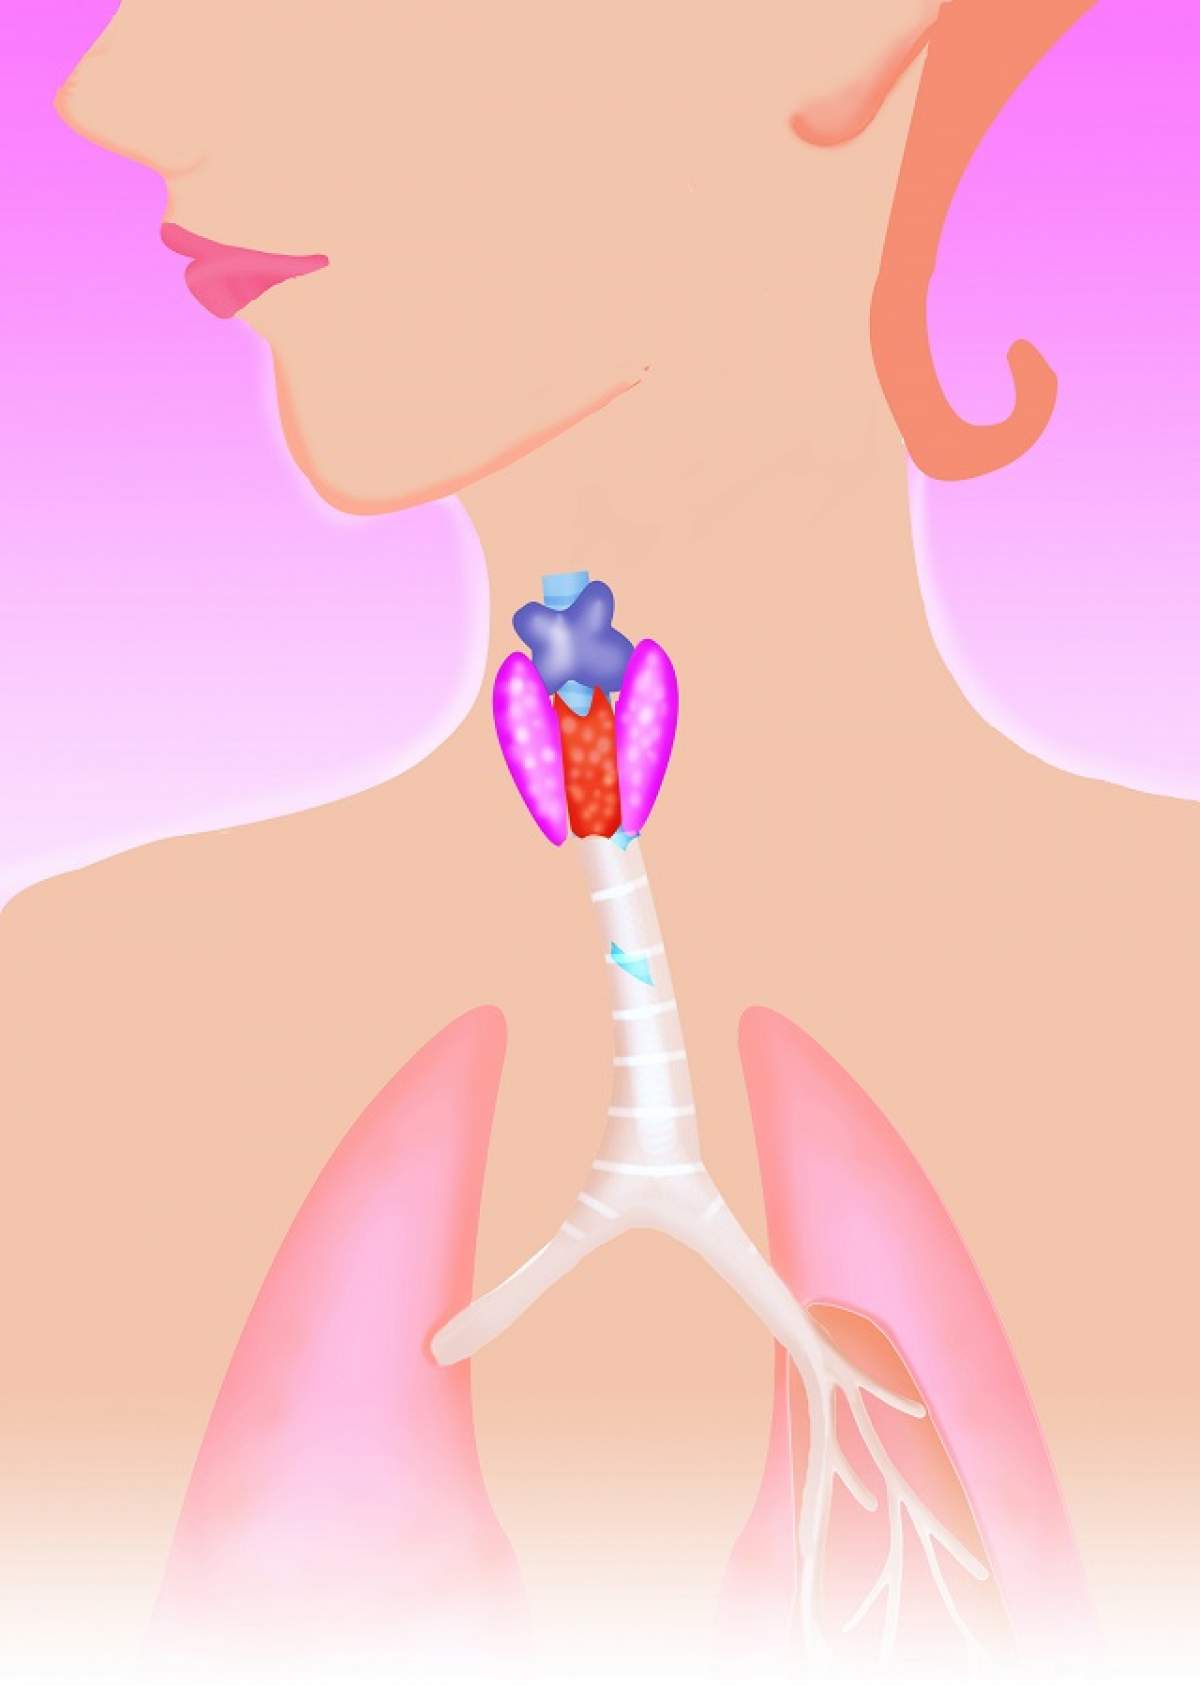 Cancerul tiroidian poate fi tratat! Care sunt cauzele şi simptomele acestei afecţiuni